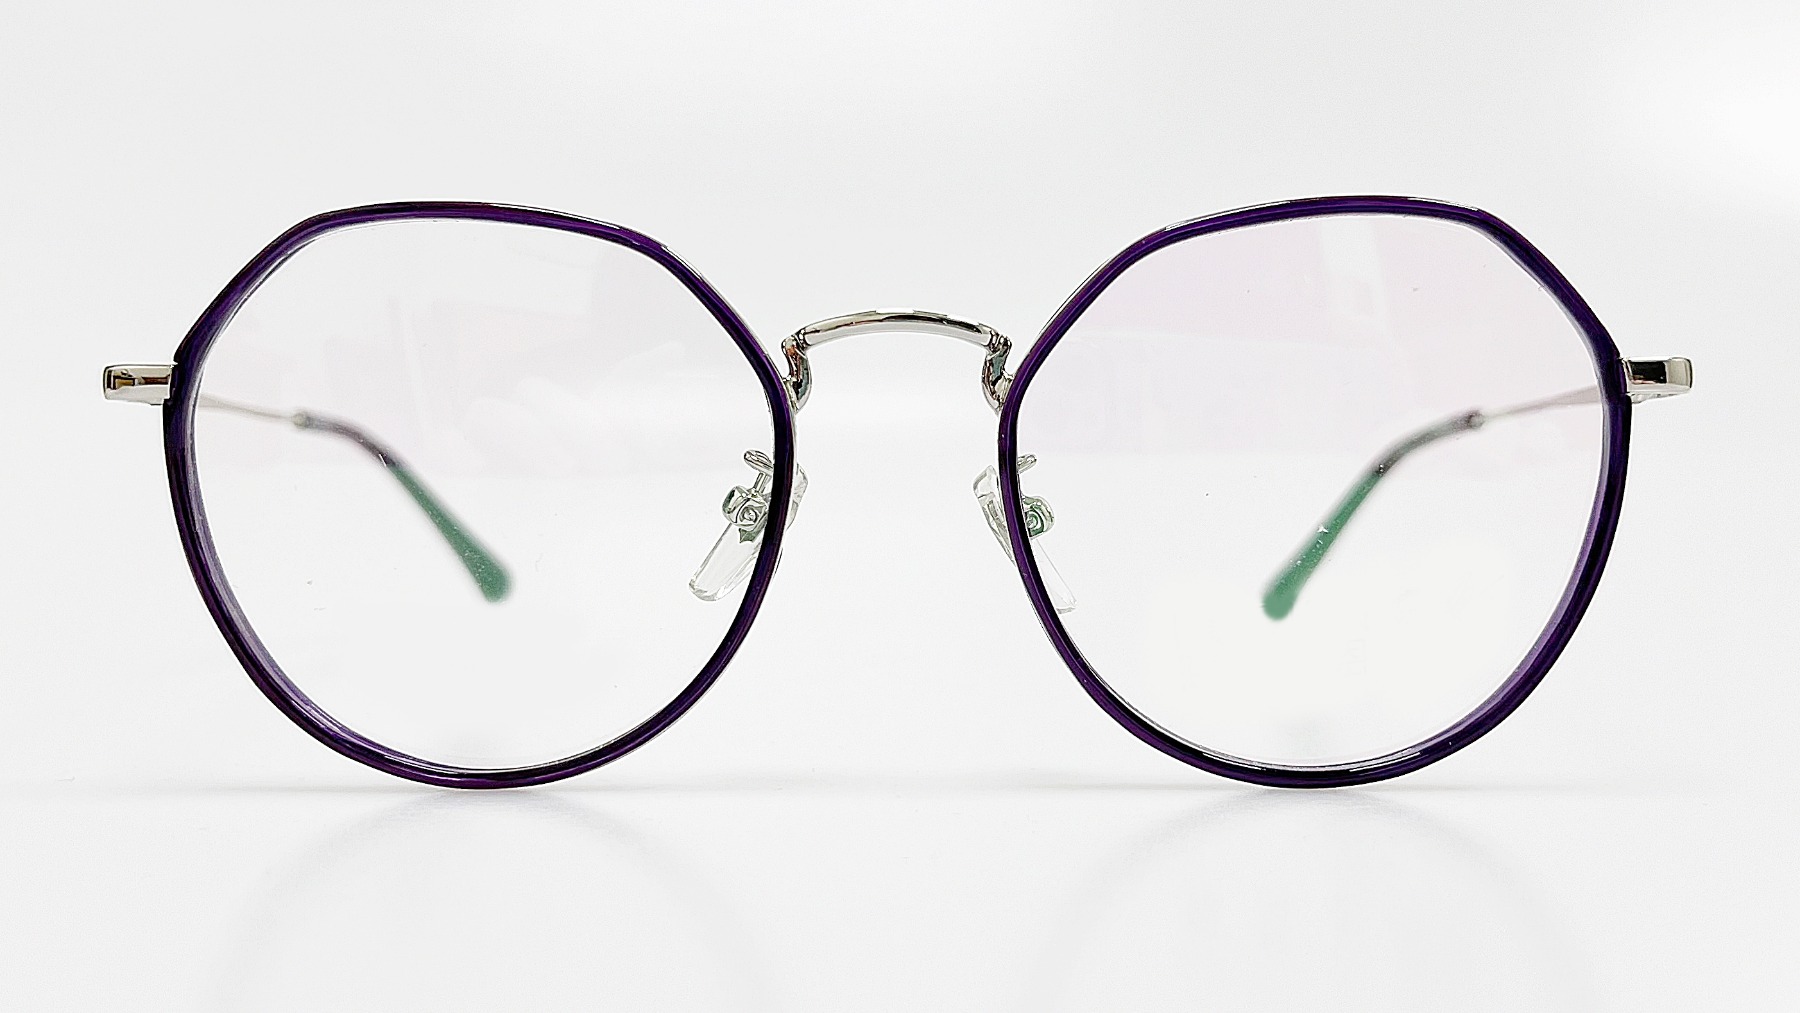 HORIEN_HN8091, Korean glasses, sunglasses, eyeglasses, glasses